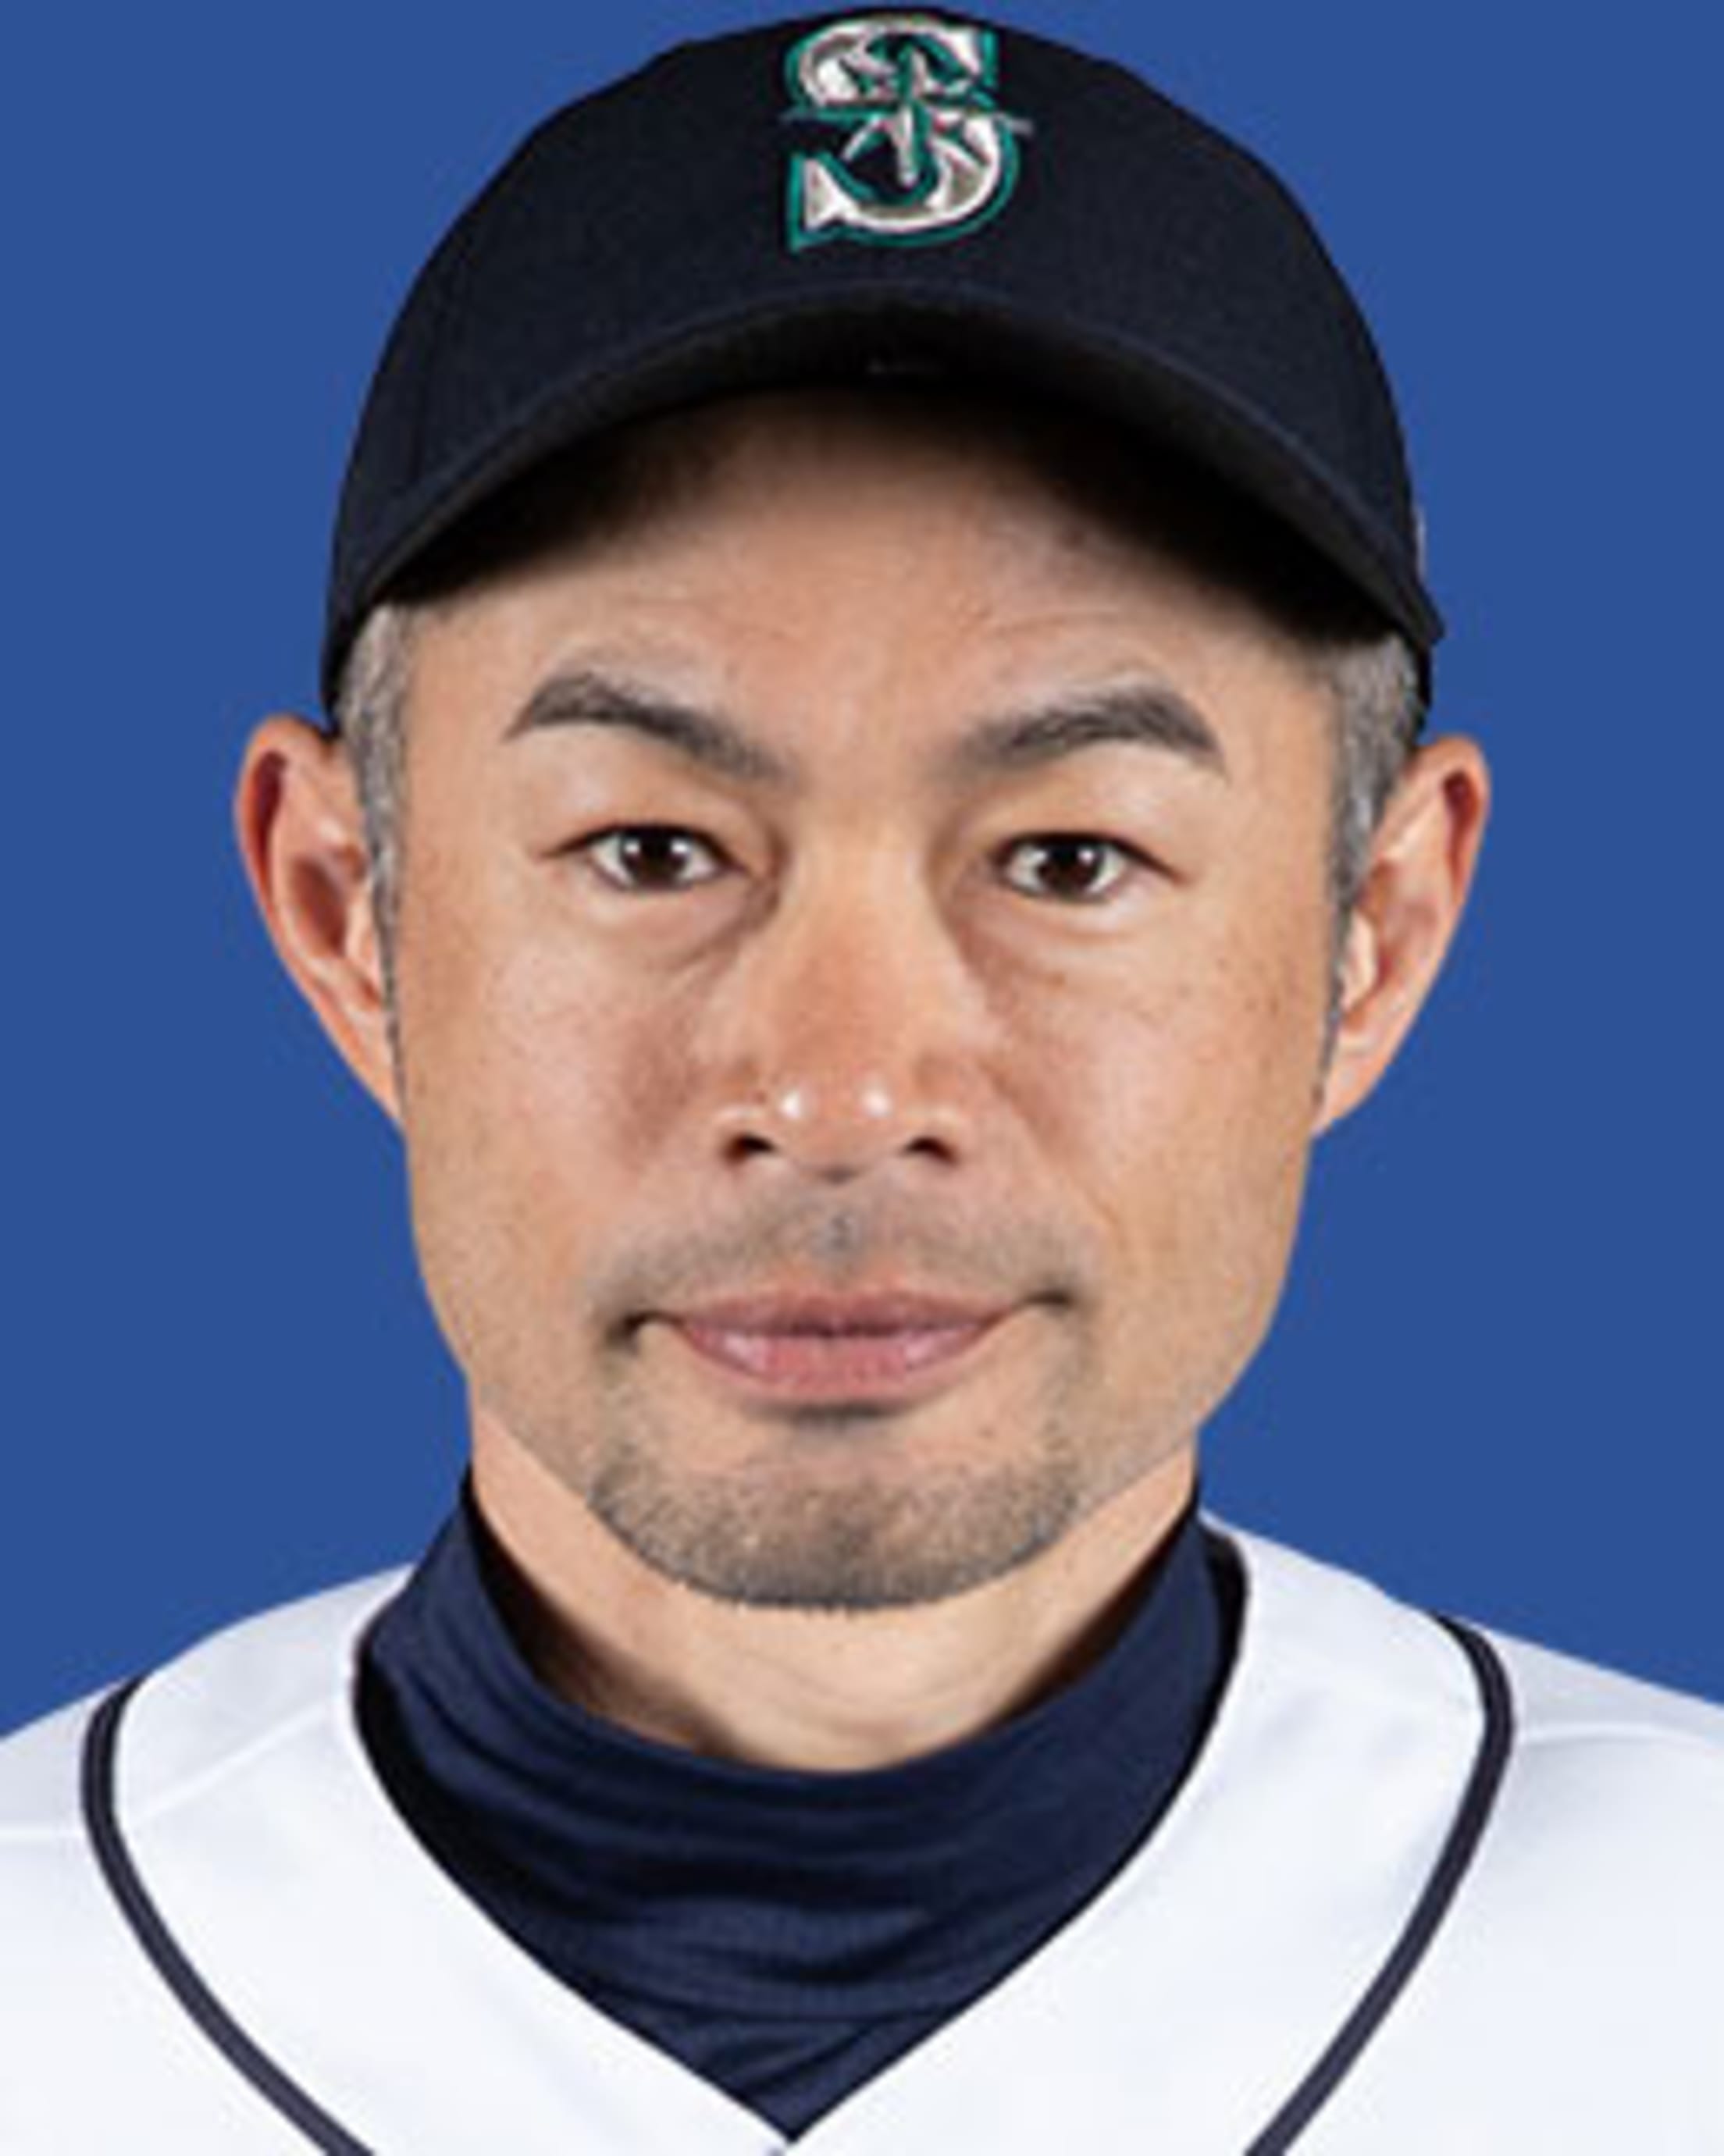 Ichiro Suzuki – Society for American Baseball Research